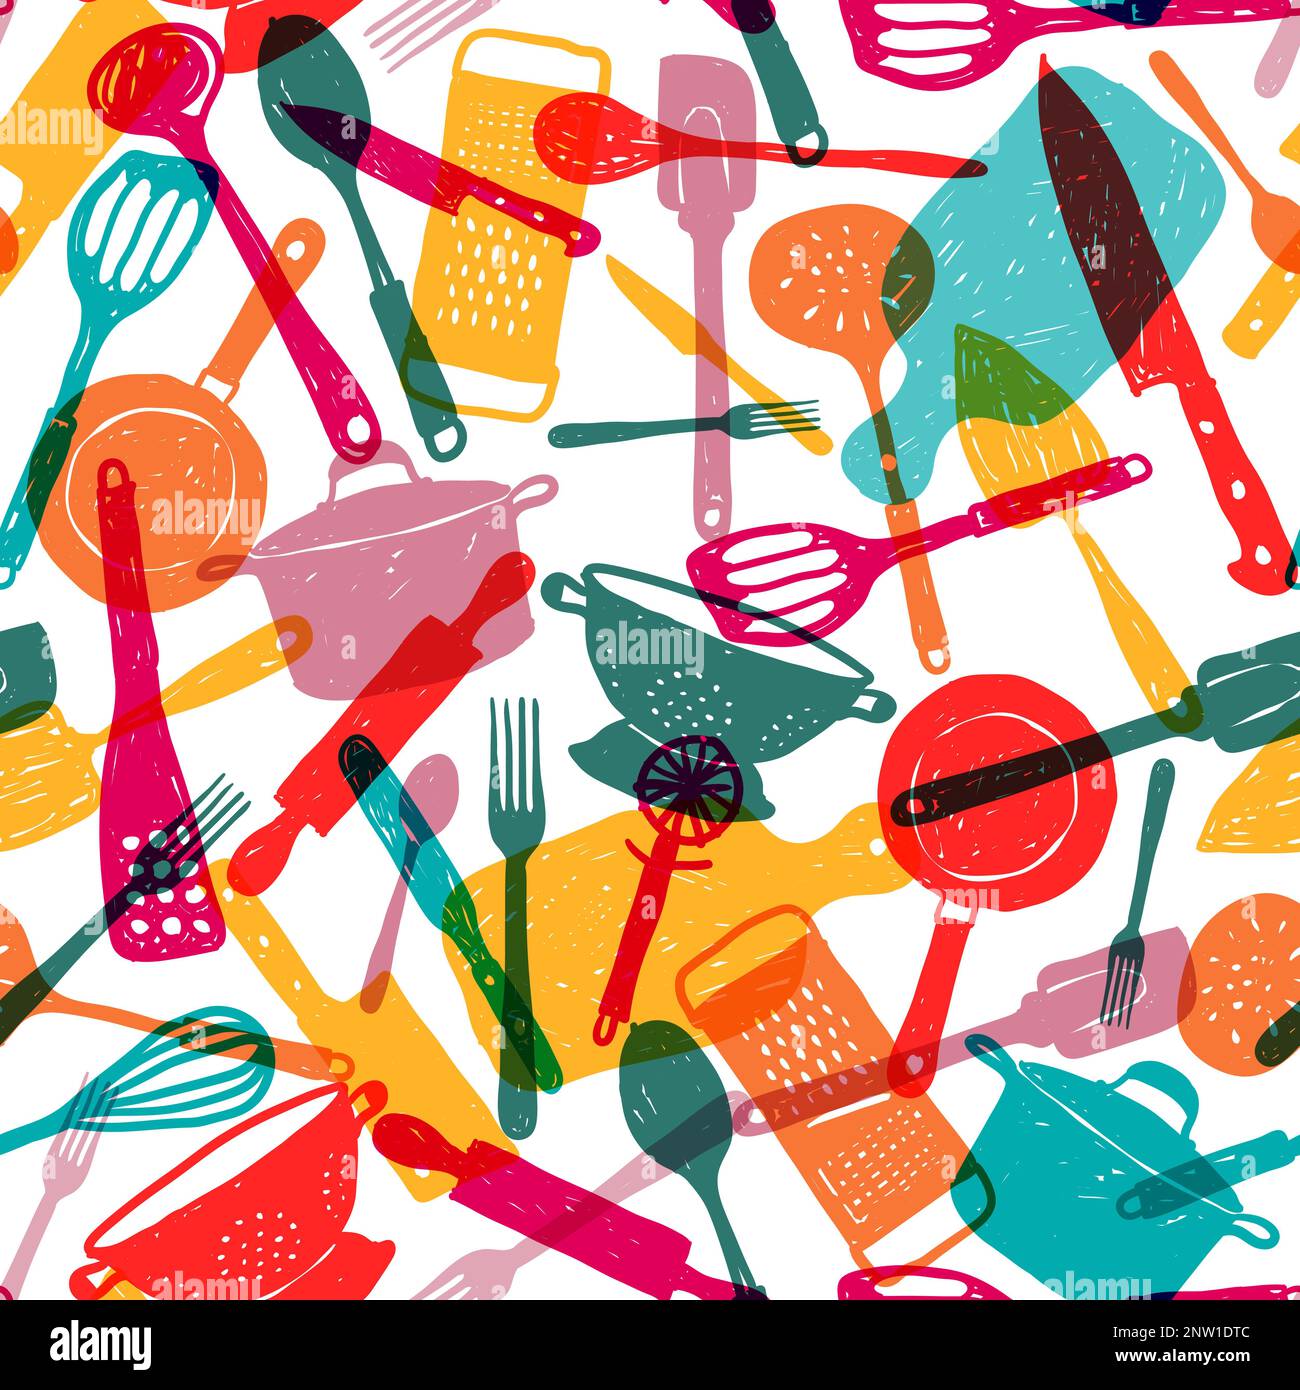 https://c8.alamy.com/compes/2nw1dtc/juego-de-herramientas-de-cocina-diseno-de-patron-sin-fisuras-diversos-utensilios-de-cocina-en-colorido-estilo-doodle-transparente-sobre-fondo-aislado-multicolor-vector-illu-2nw1dtc.jpg